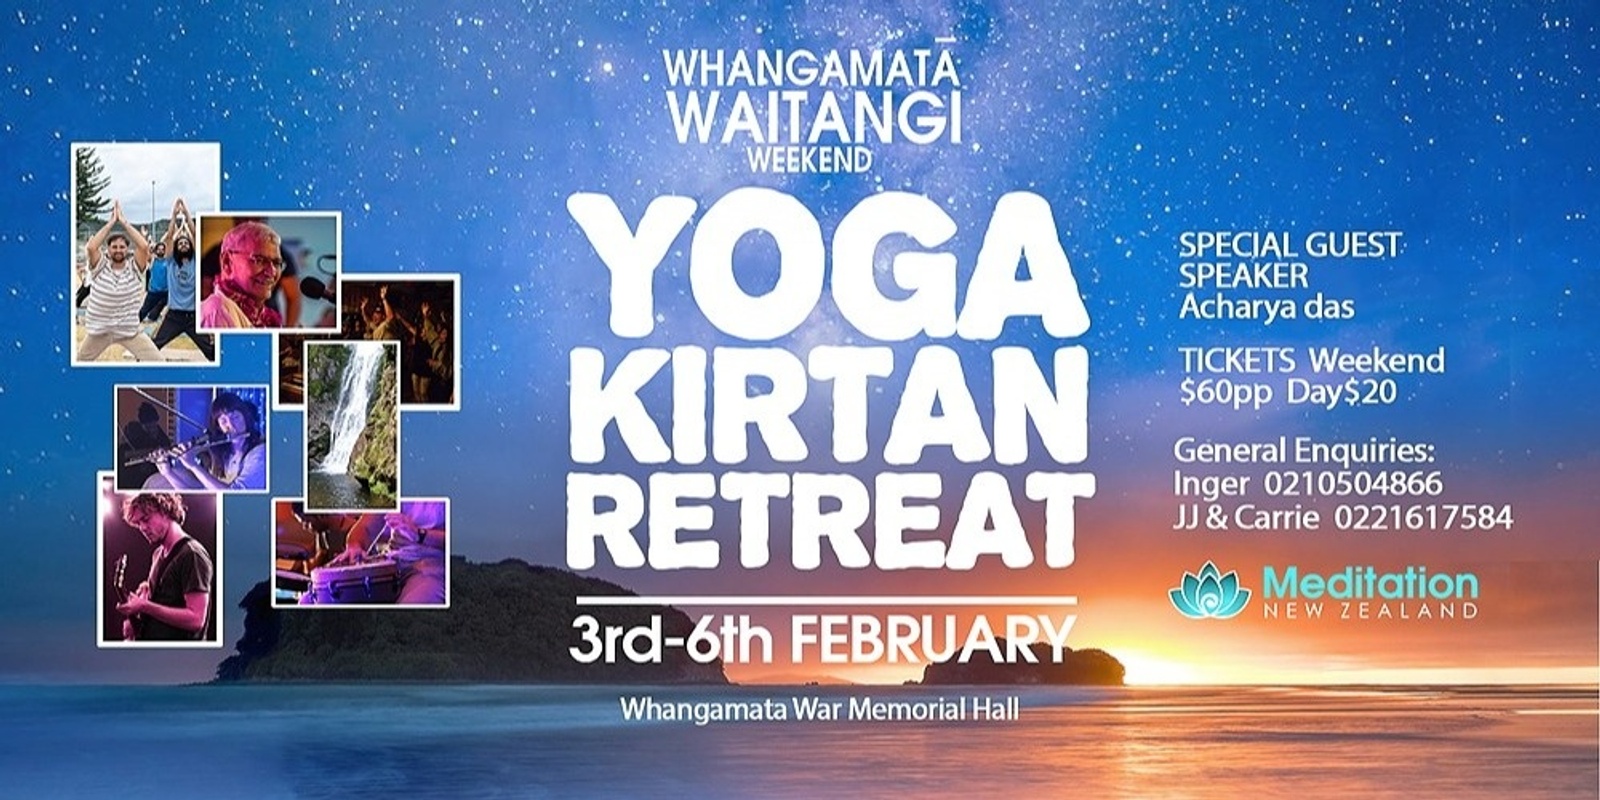 Banner image for Whangamata Waitangi Weekend Yoga Kirtan Retreat